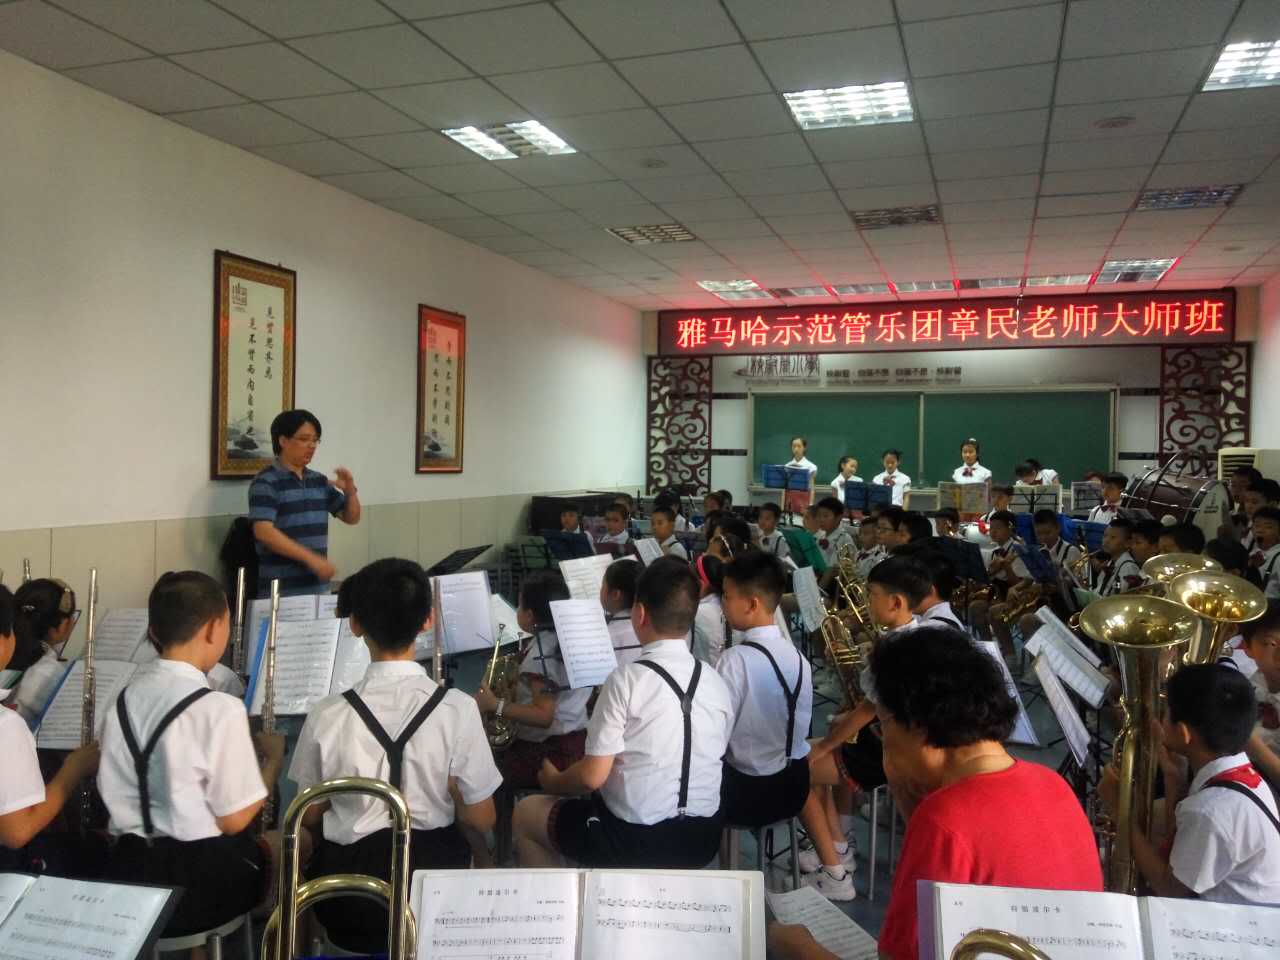 雅马哈示范乐团太原市迎泽区校尉营小学管乐团大师班成功举办